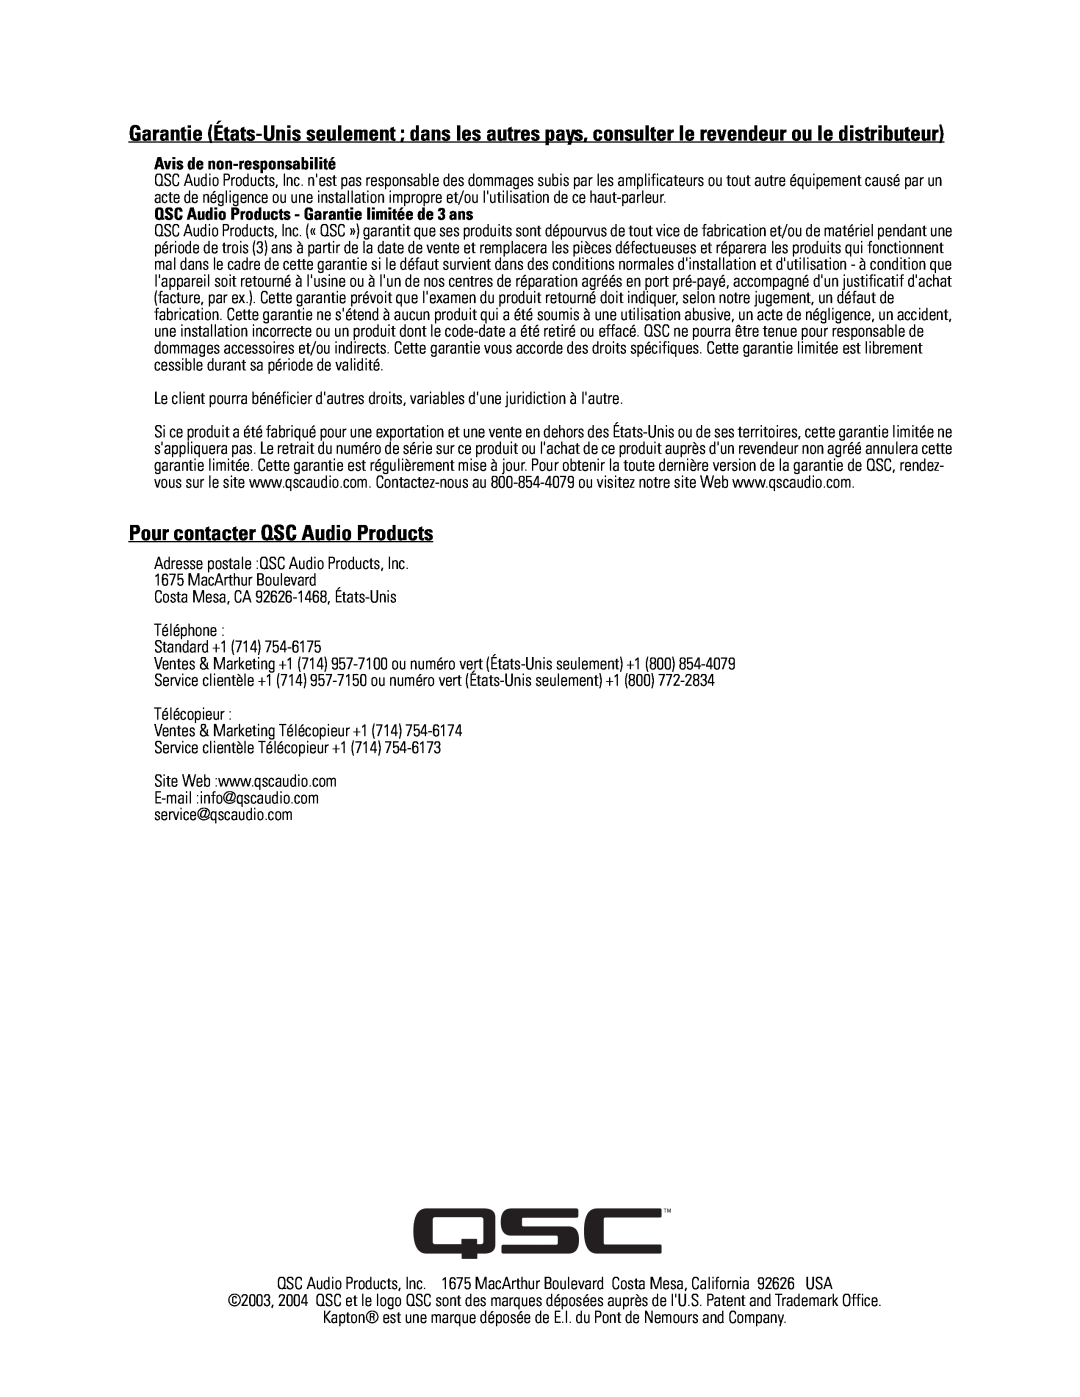 Polaroid LF-4215 user manual Pour contacter QSC Audio Products, Avis de non-responsabilité 